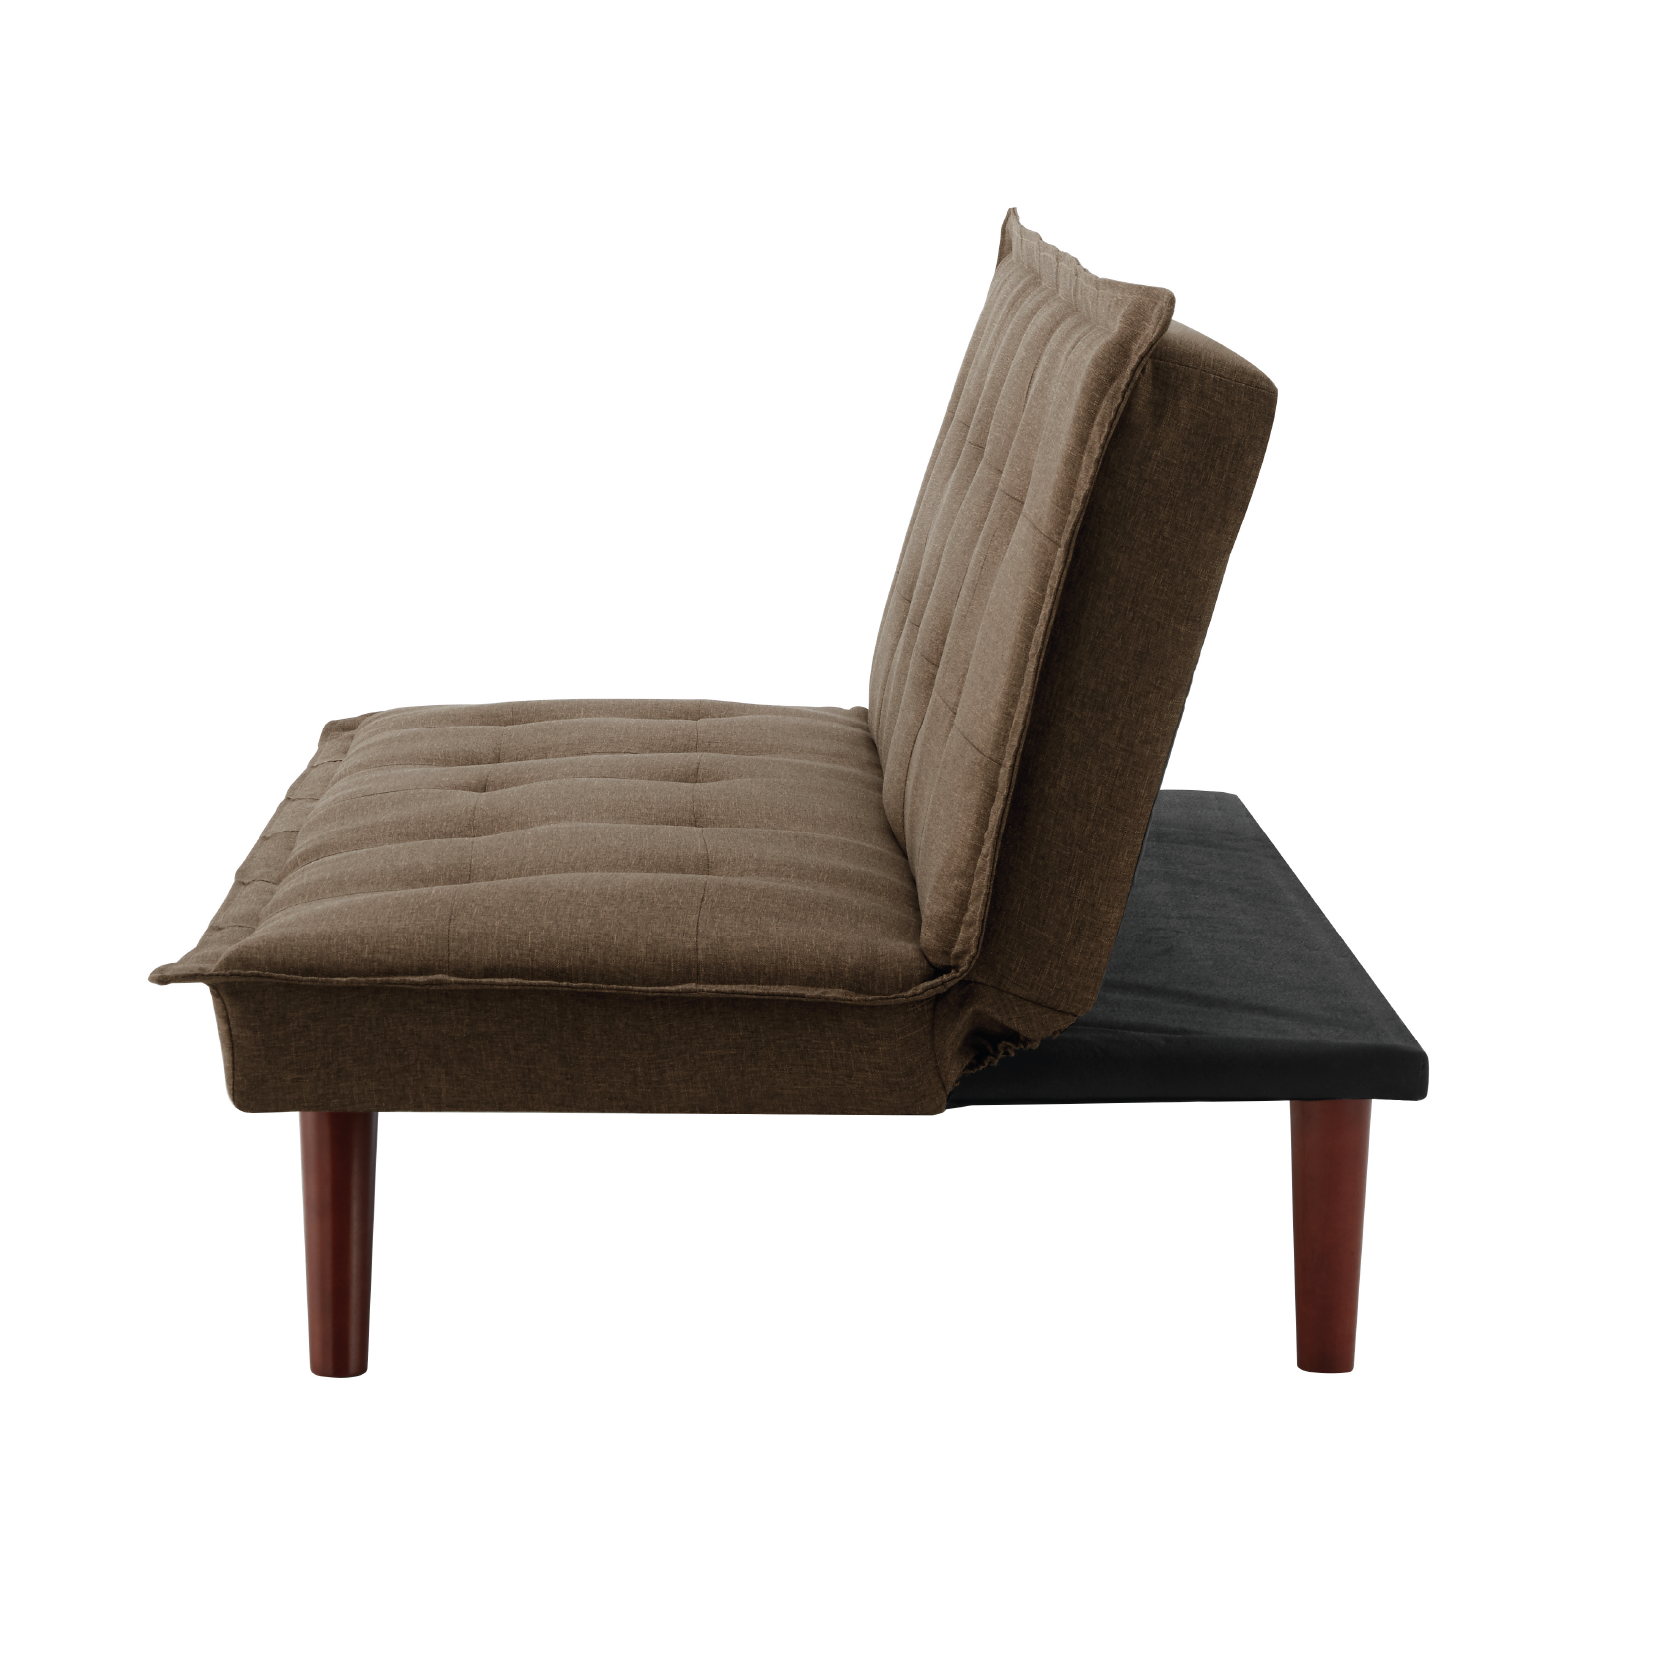 The 'Toni' Sofa Bed - Brown Bravich LTD.